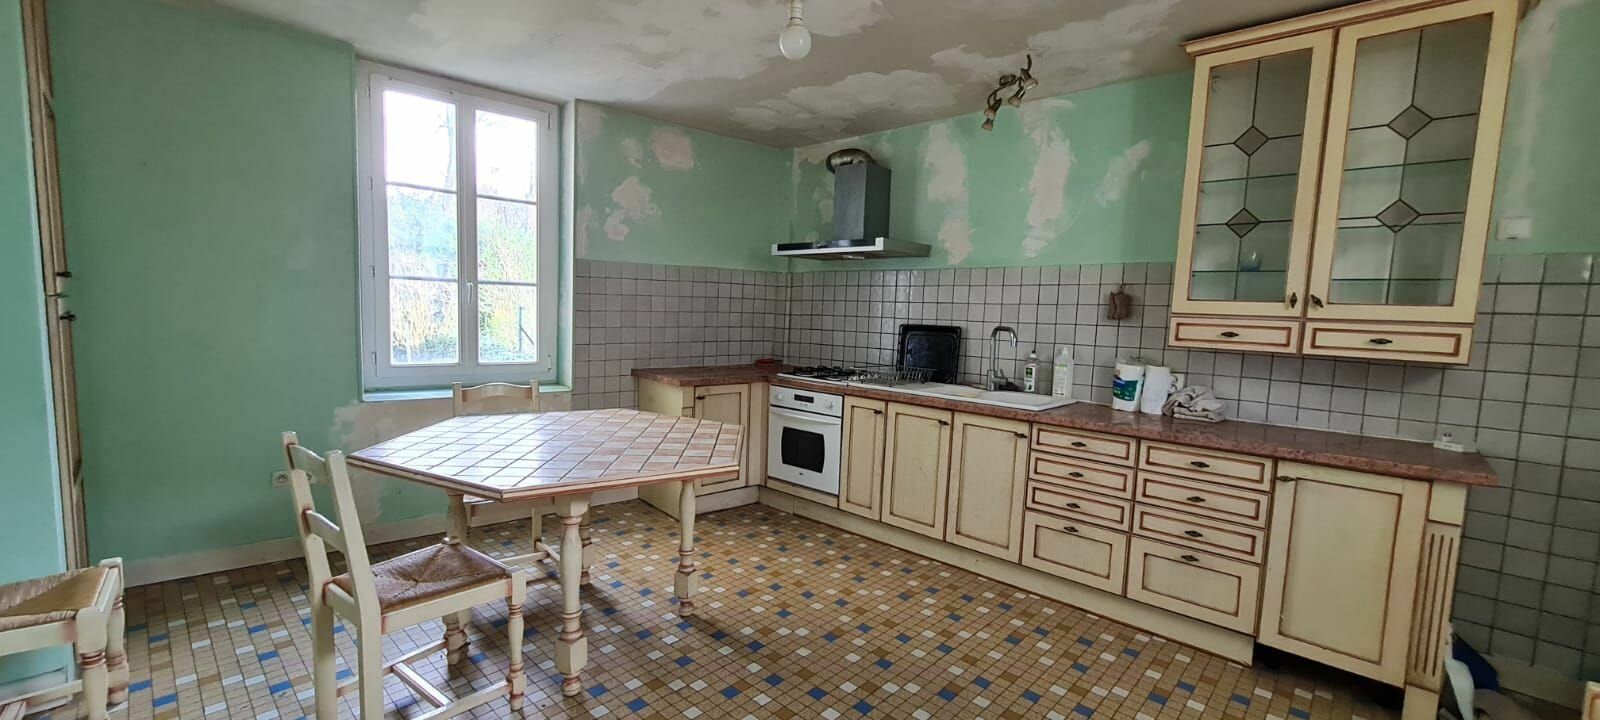 Maison à vendre 2 150m2 à Saâcy-sur-Marne vignette-6